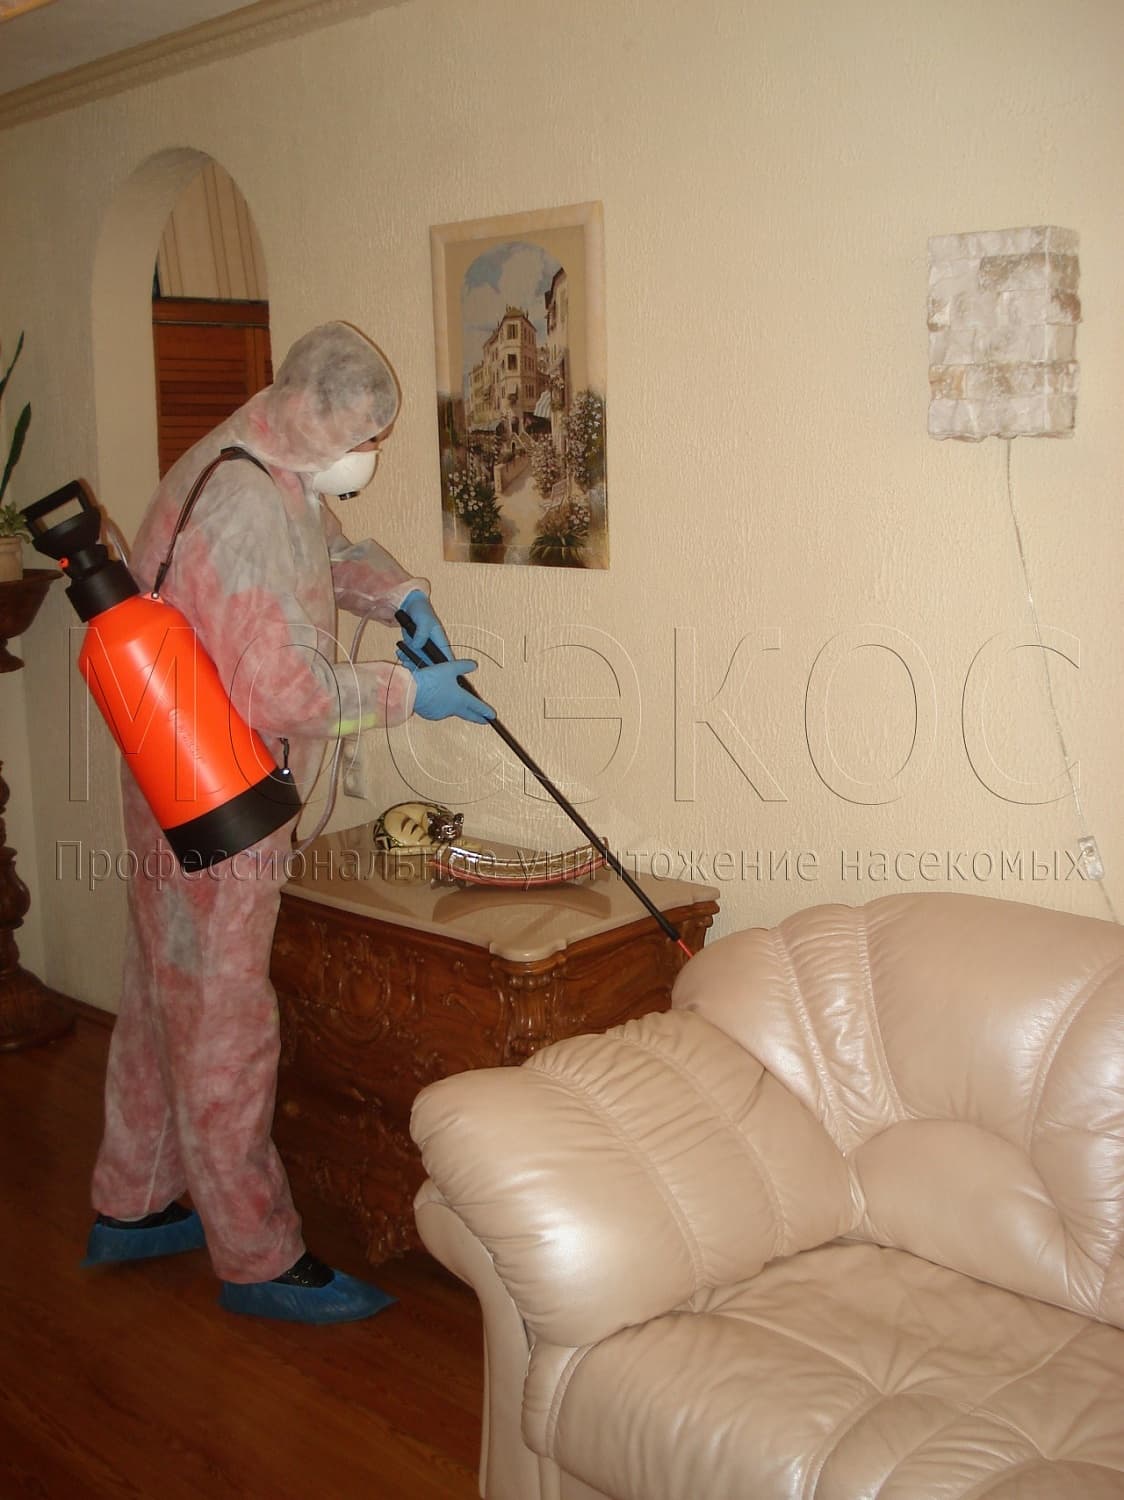 Клопы дома: как избавиться от паразитов в Подольске